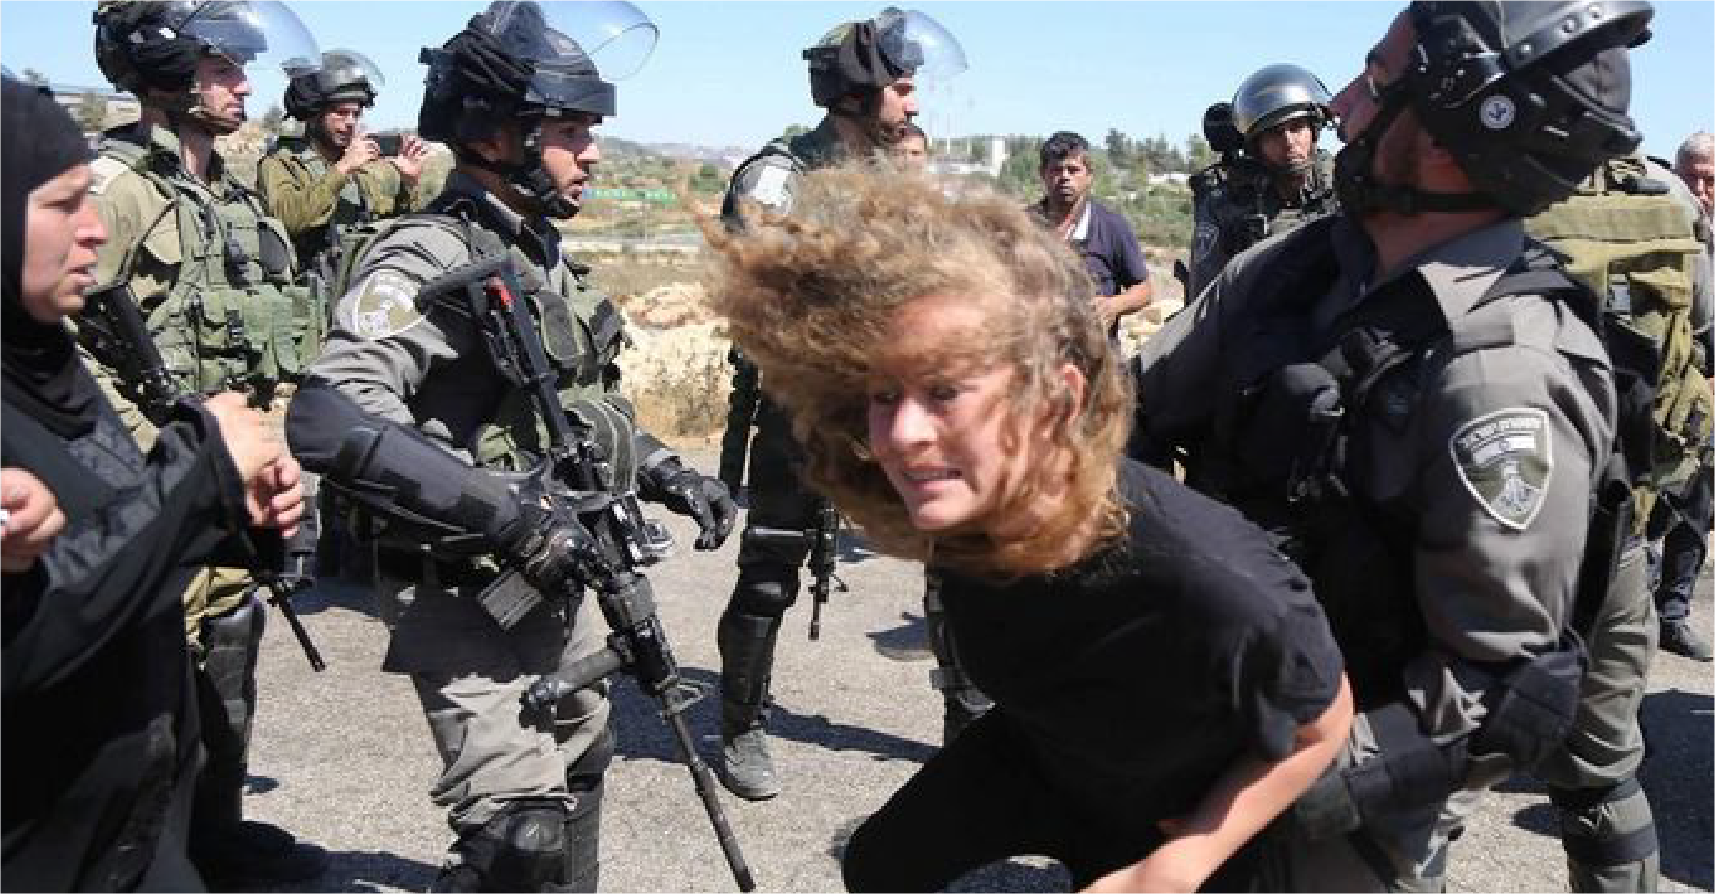 صورة بواسل الجيش الاسرائيلي يتمكنون من القبض على طفلة فلسطينية والعودة لقواعدهم بسلام